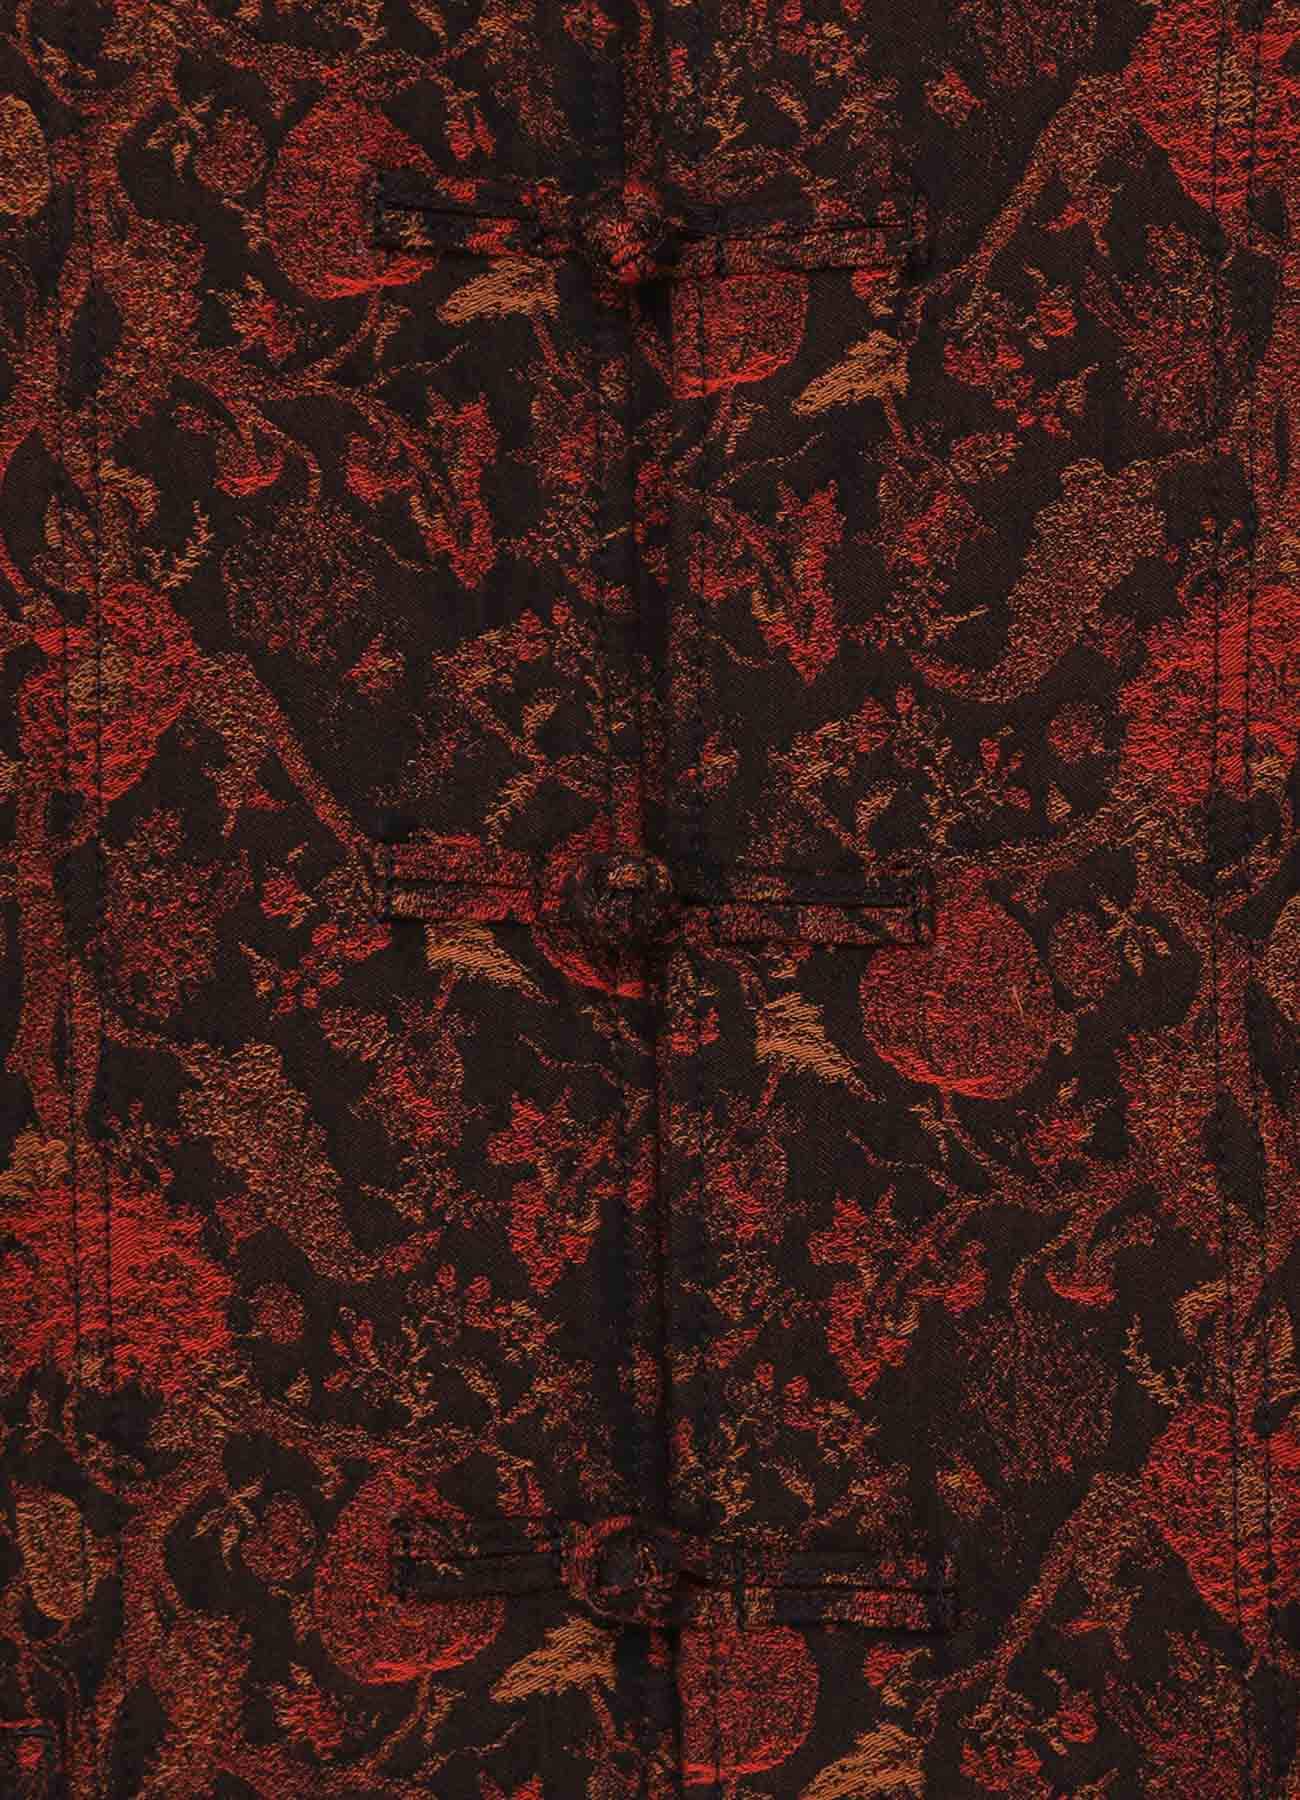 Cotton/Thorny Pattern Jacquard China Jacket